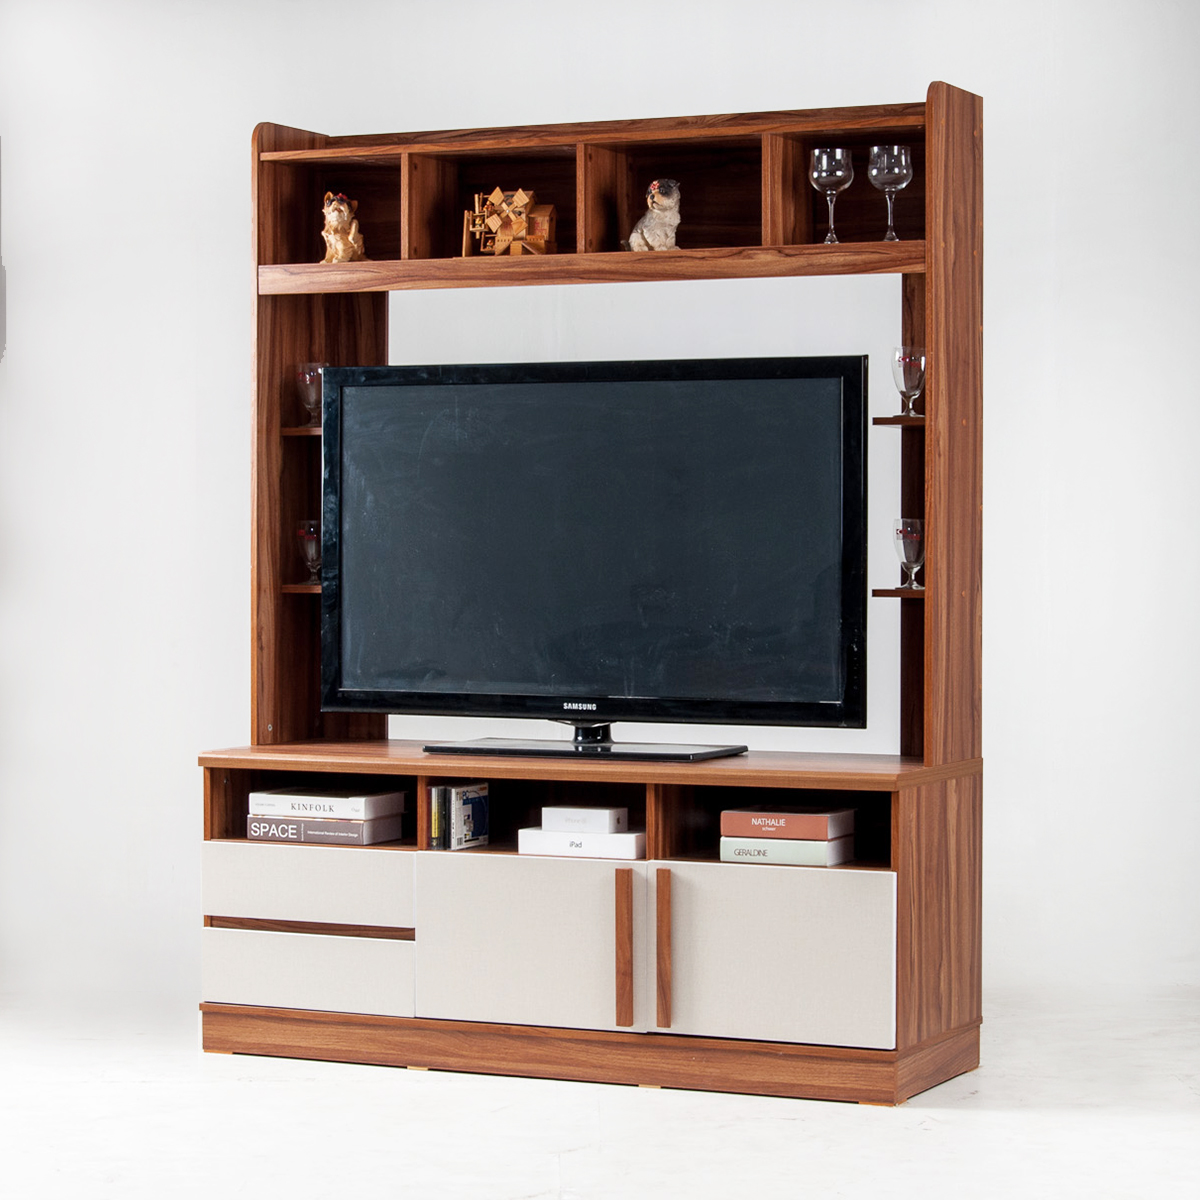 ส่งฟรี! ตู้วางทีวี ชั้นวางทีวี ขนาดใหญ่ 150 ซม. วางทีวี 65 นิ้วได้ TV stand cabinet